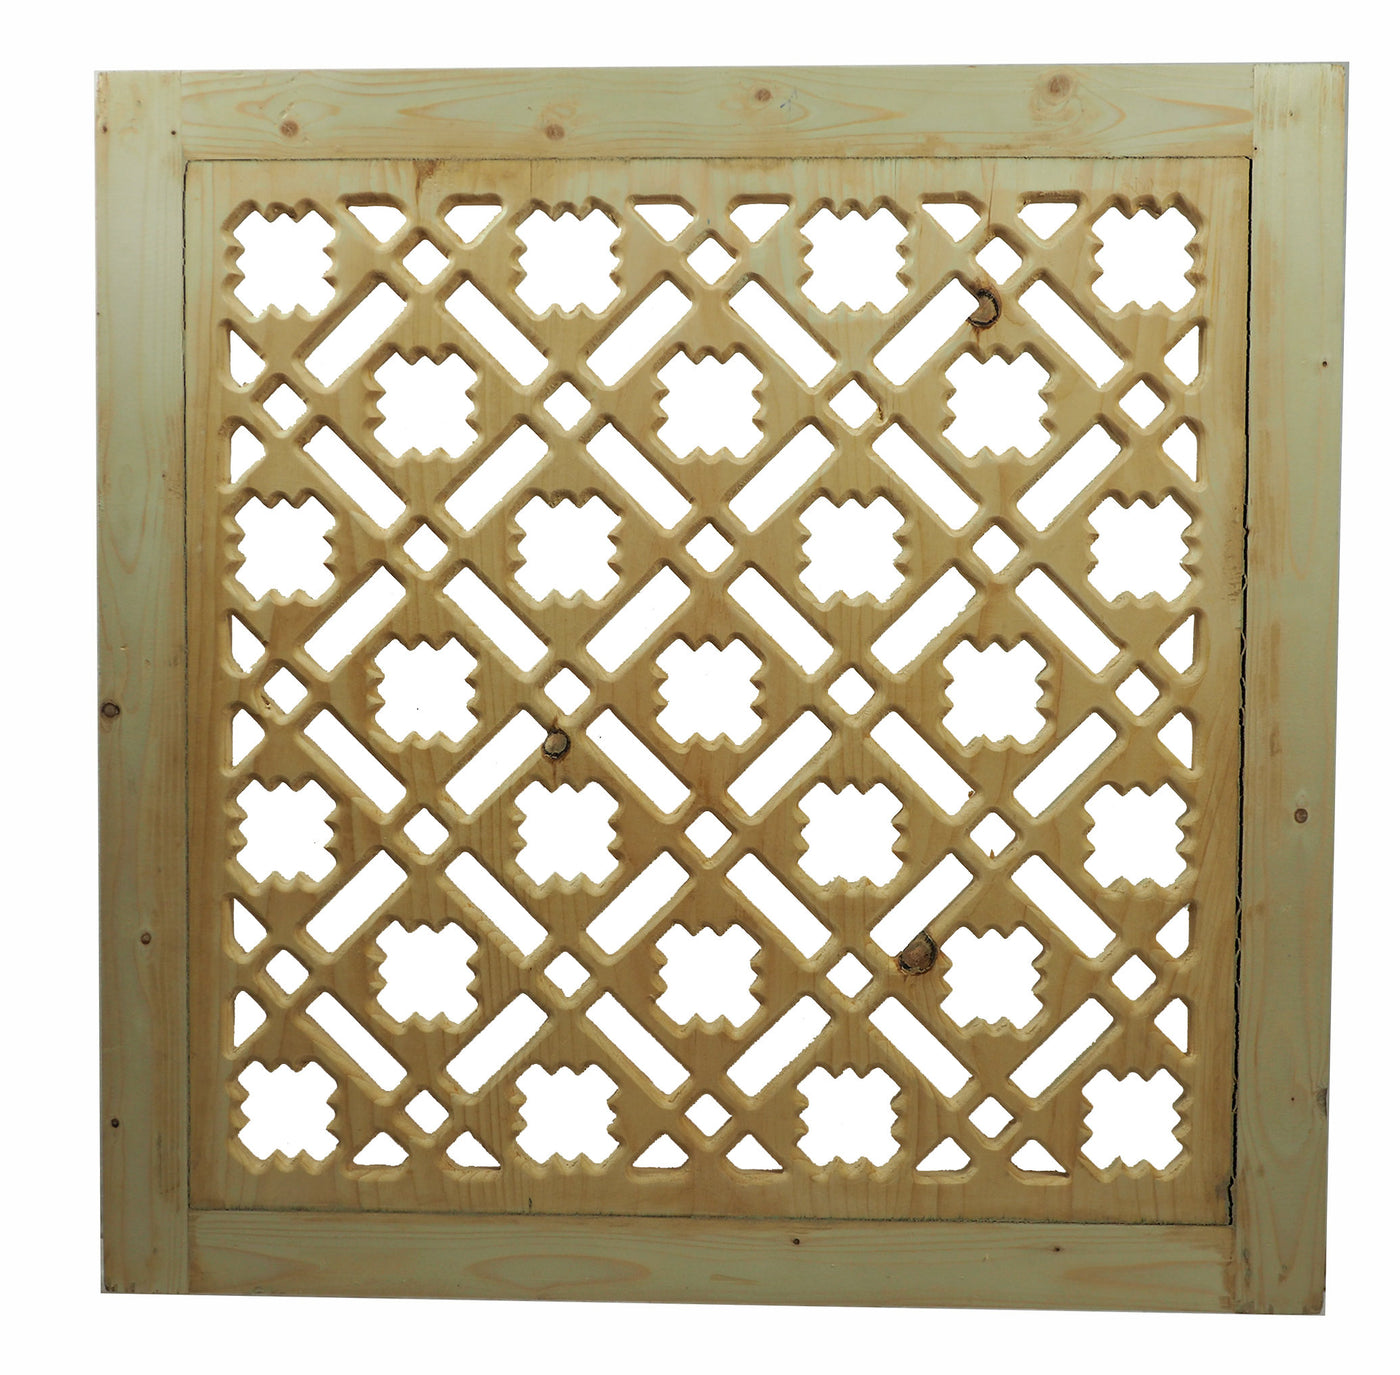 80x80 cm orient handgeschnitzt Holz Fenster Gitter Ziergitter islmische Jali Screen mashrabiya panel new Nr:21 Dekoration Orientsbazar   